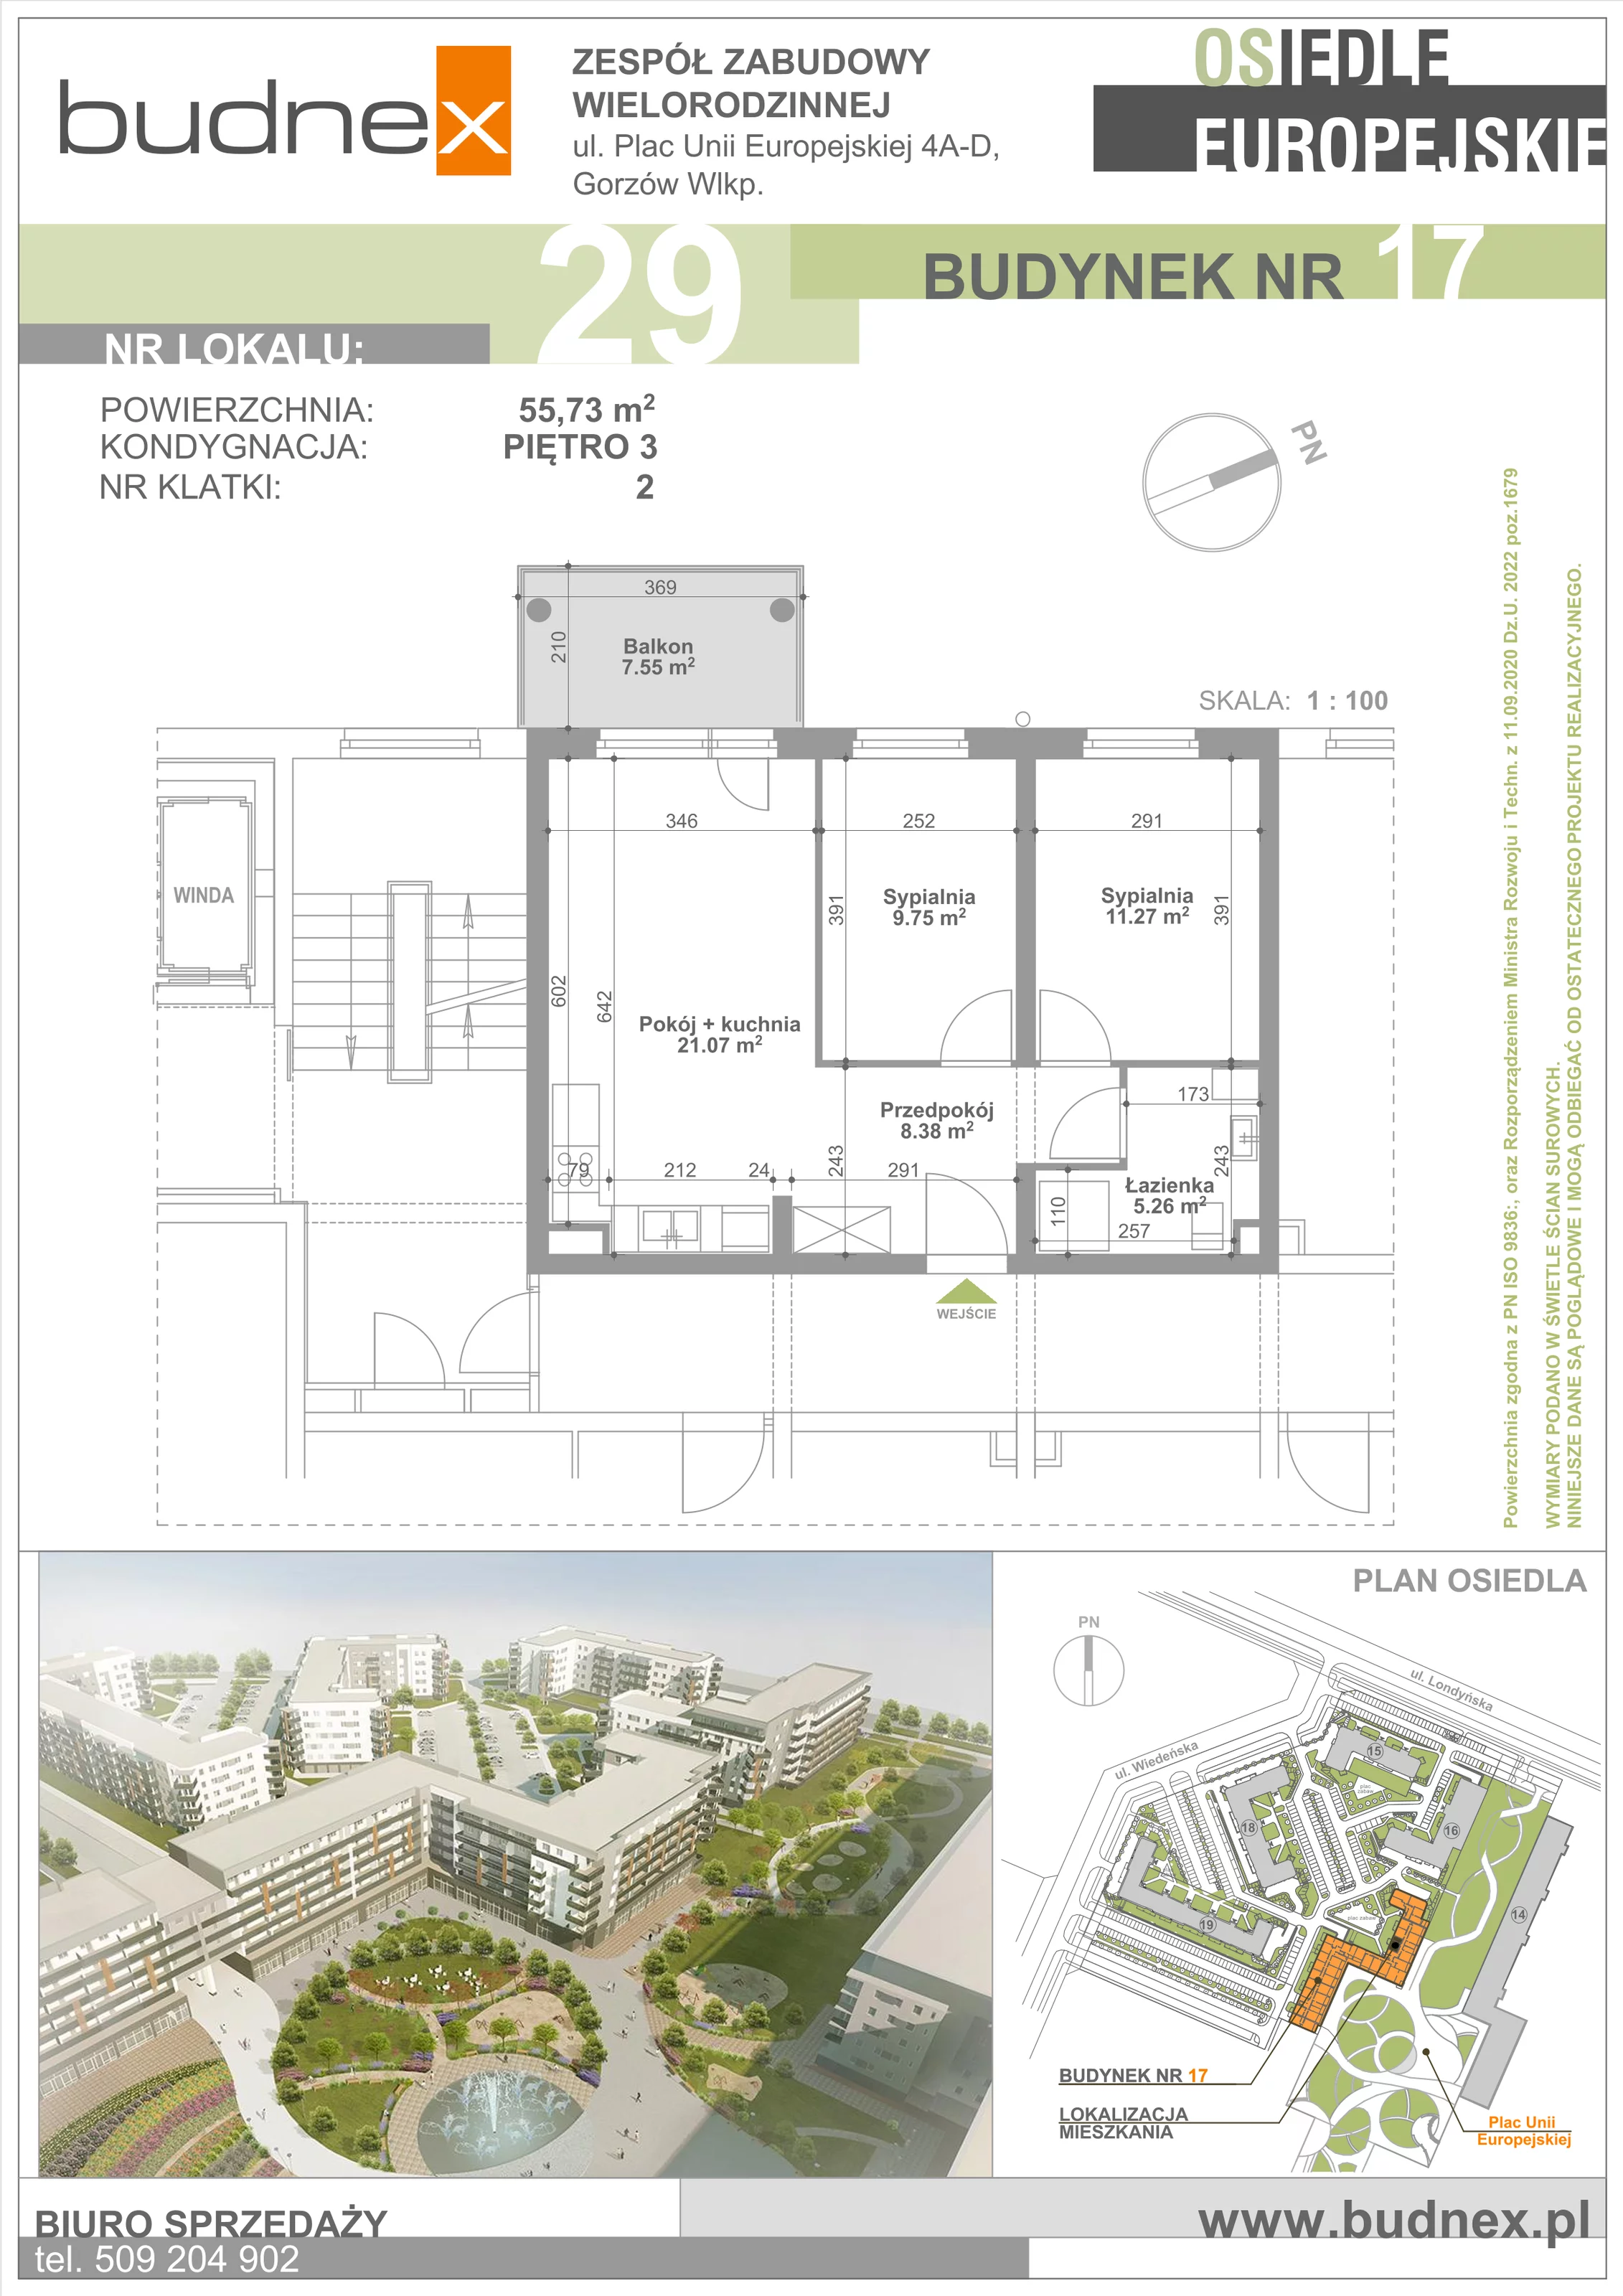 Mieszkanie 55,73 m², piętro 3, oferta nr 2/M29, Osiedle Europejskie - Budynek 17, Gorzów Wielkopolski, Plac Unii Europejskiej 4A-D